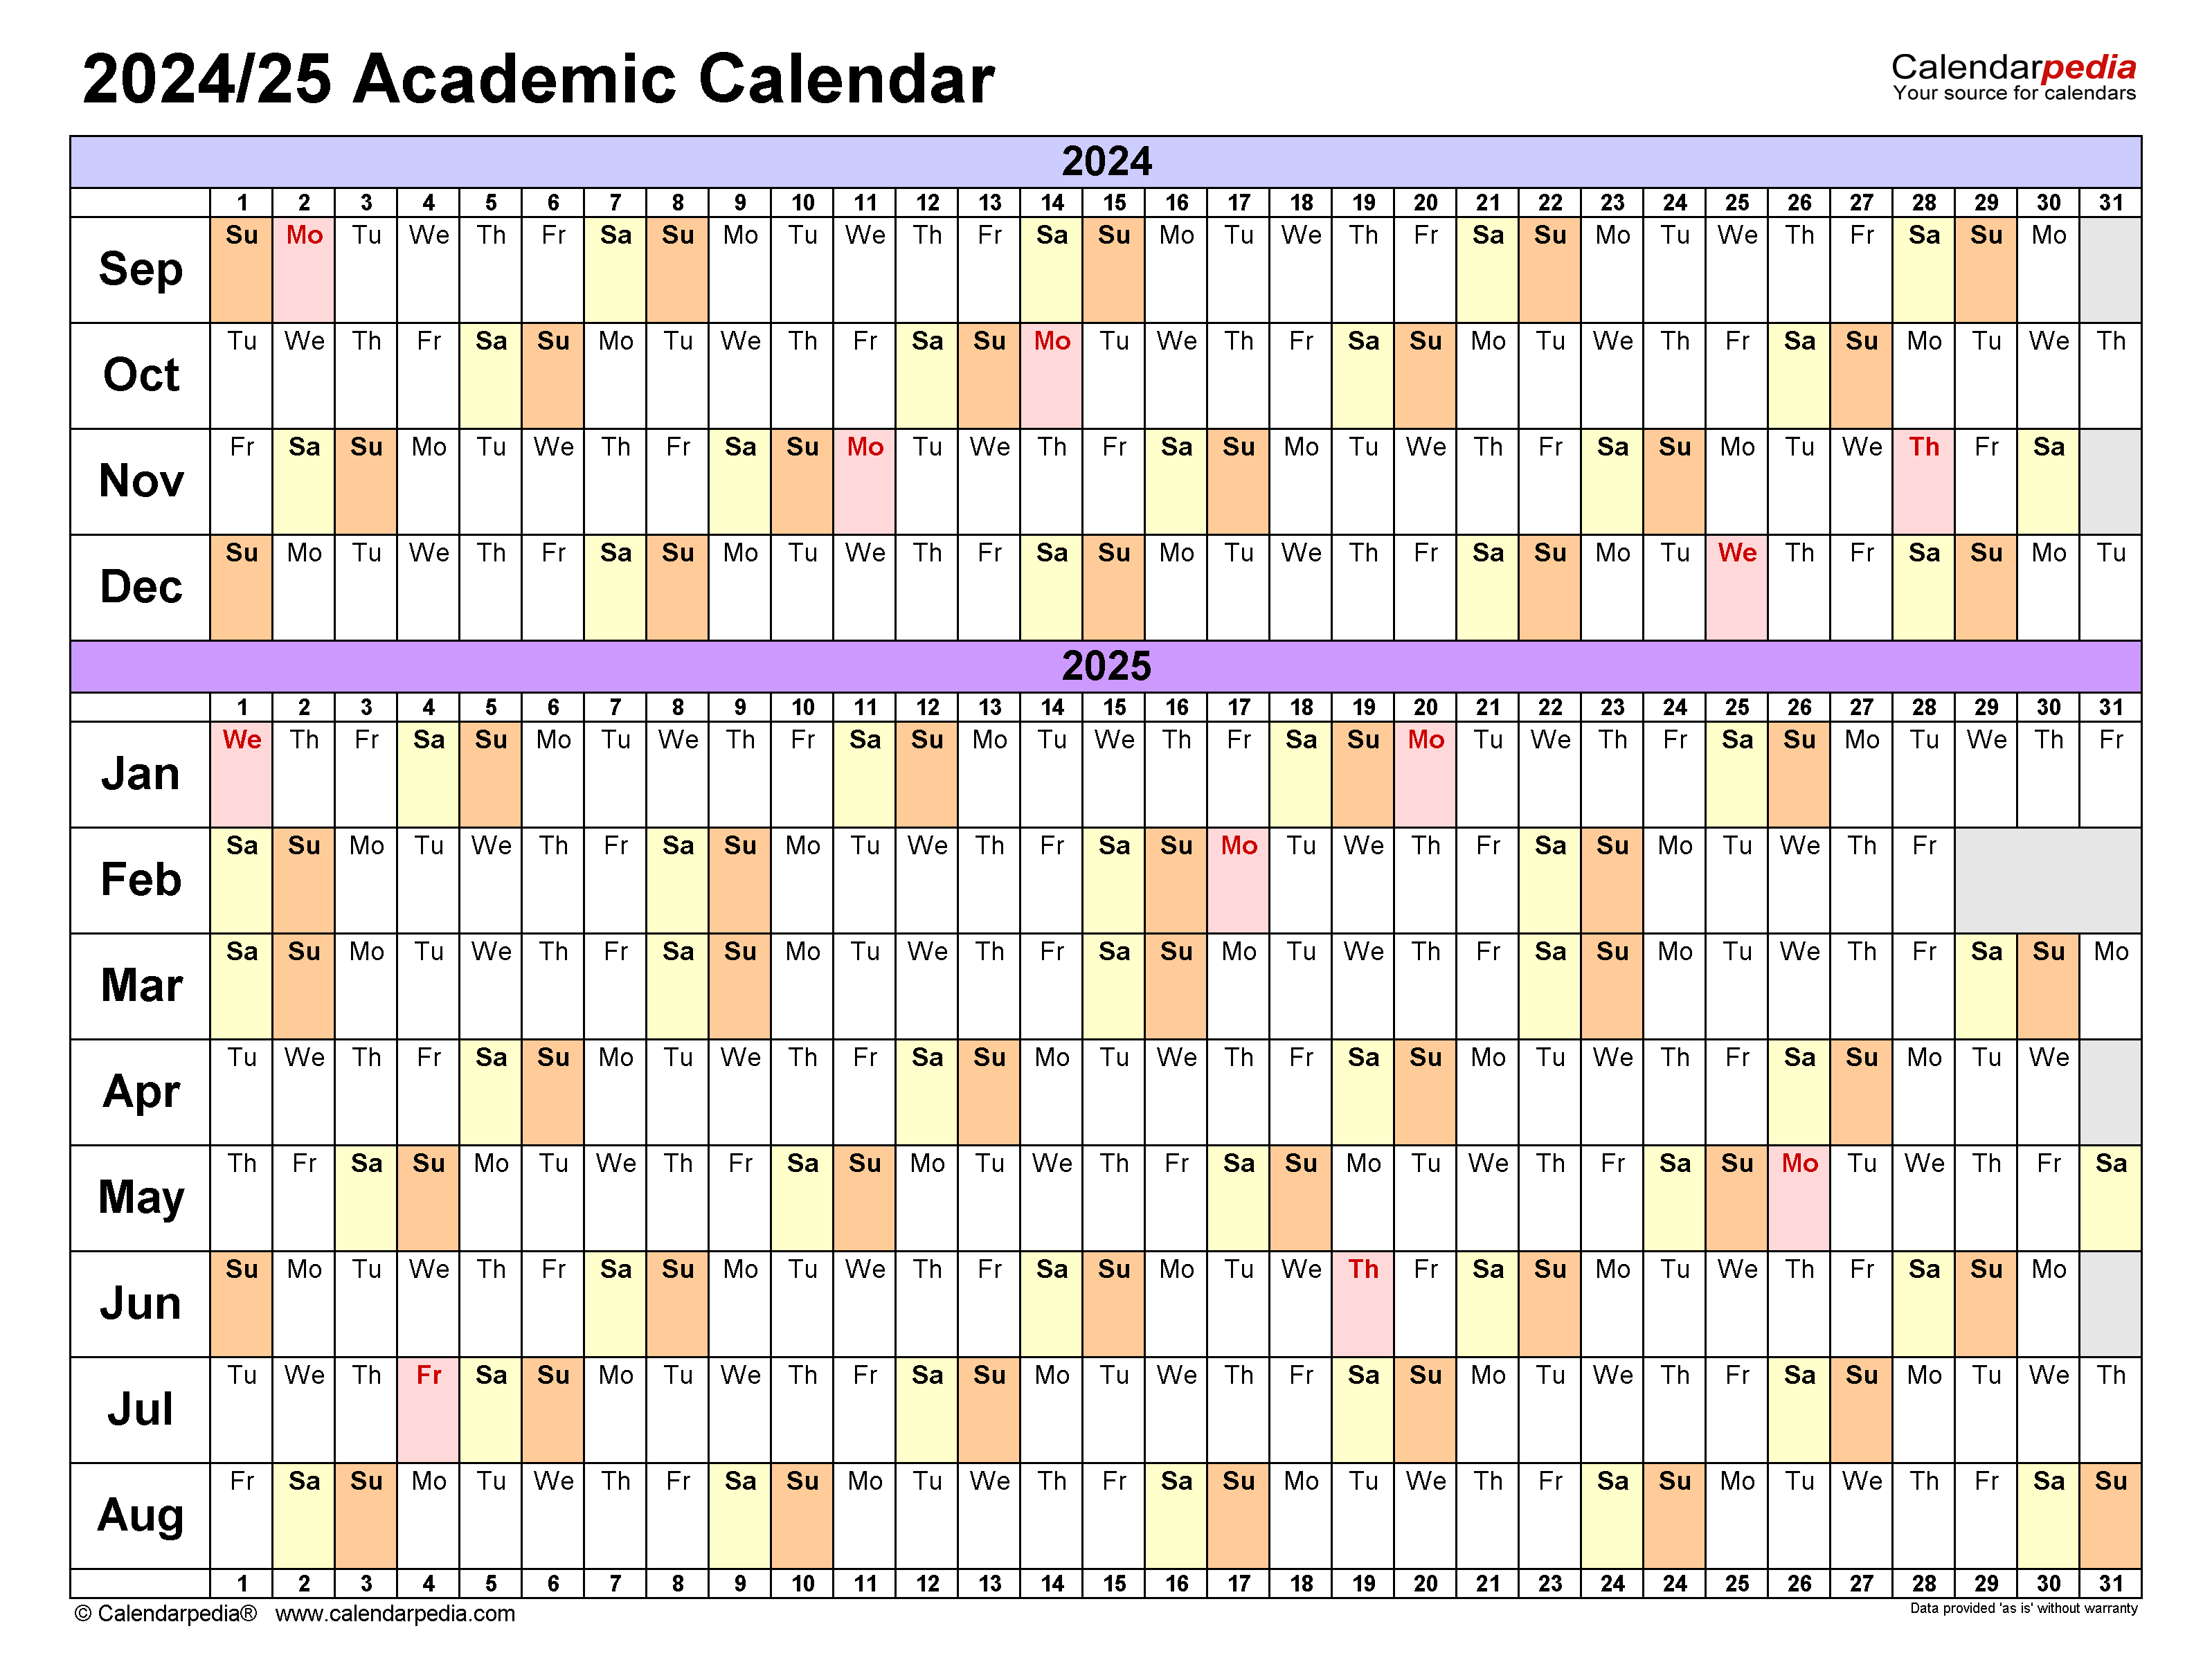 Ku Spring 2025 Academic Calendar